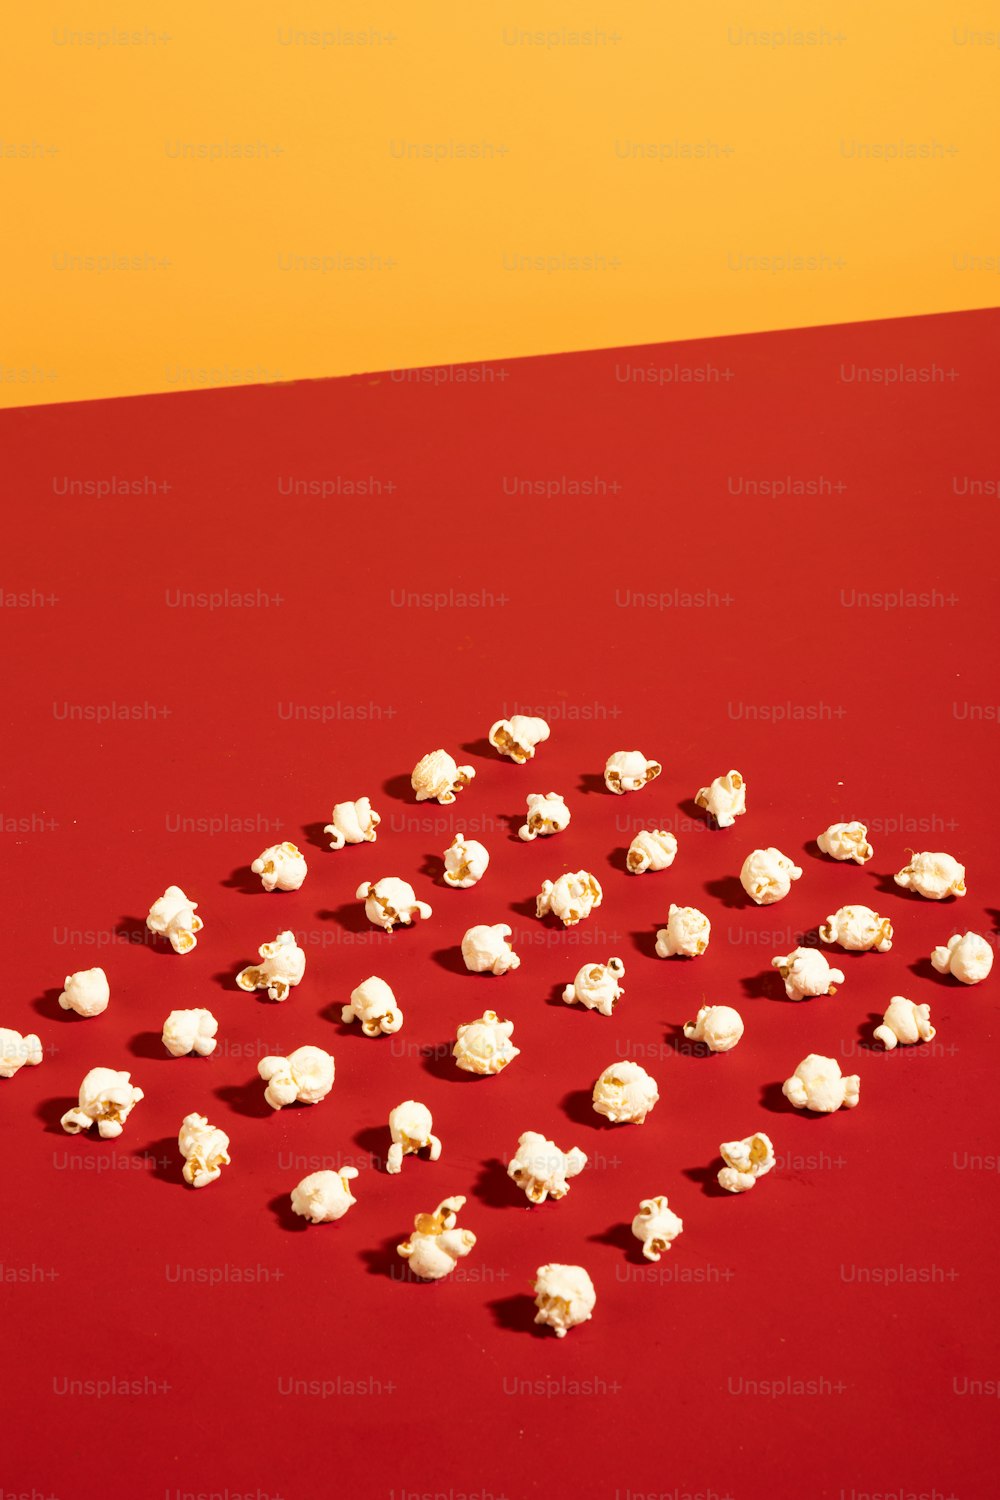 Un tavolo rosso sormontato da un sacco di marshmallow bianchi